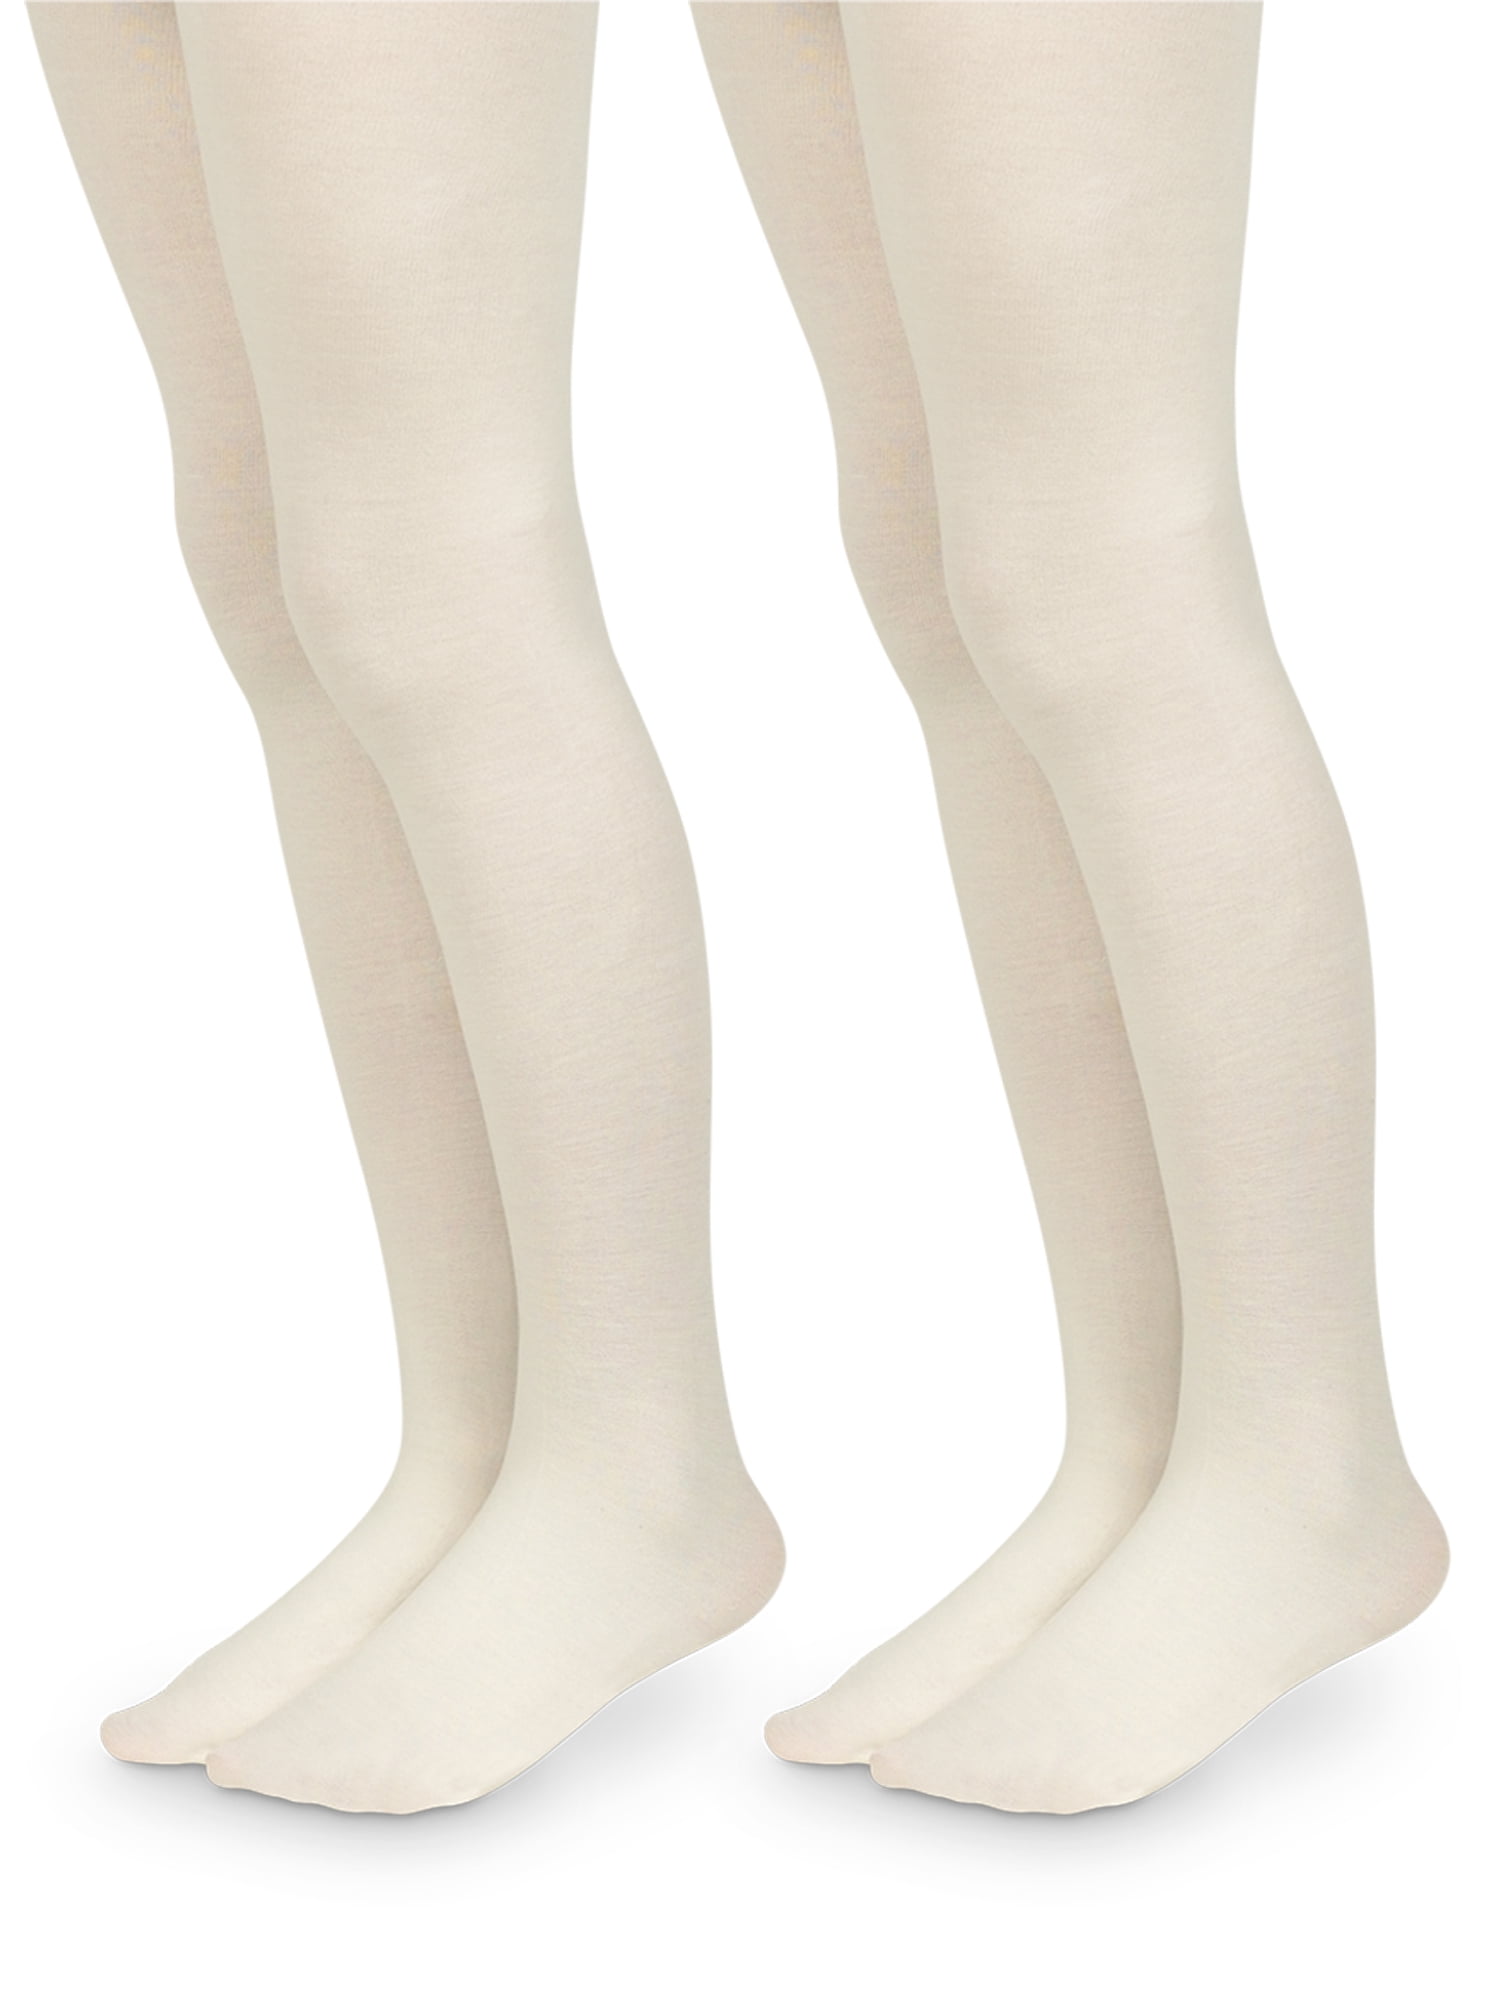 Jefferies Socks Girls' Microfiber Footless Tights